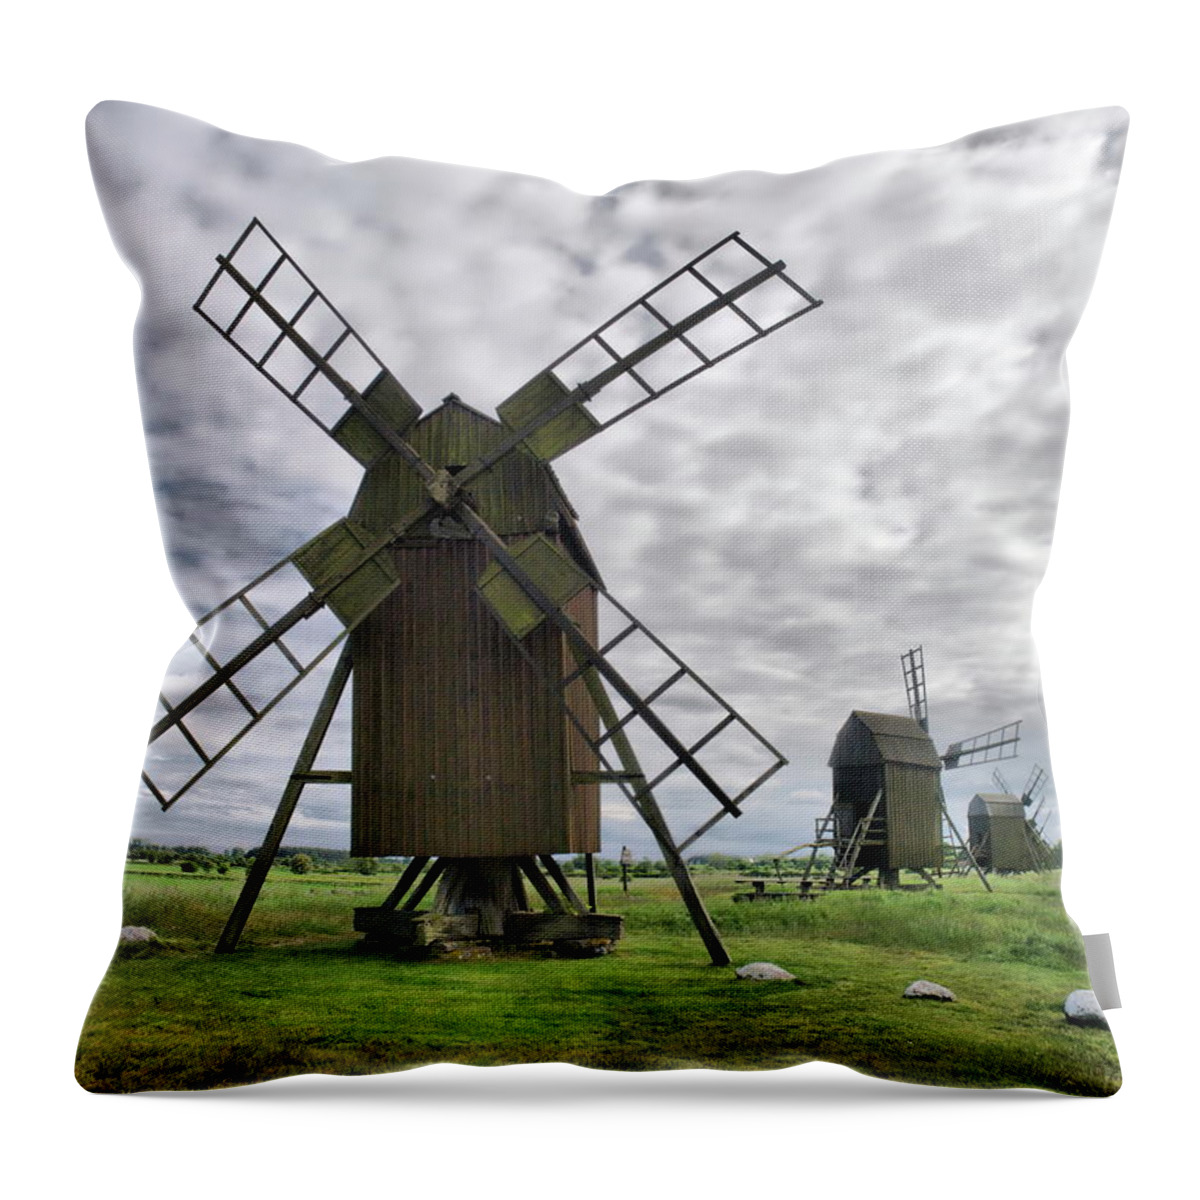 Lehtokukka Throw Pillow featuring the photograph Windmills of Oland 2 by Jouko Lehto